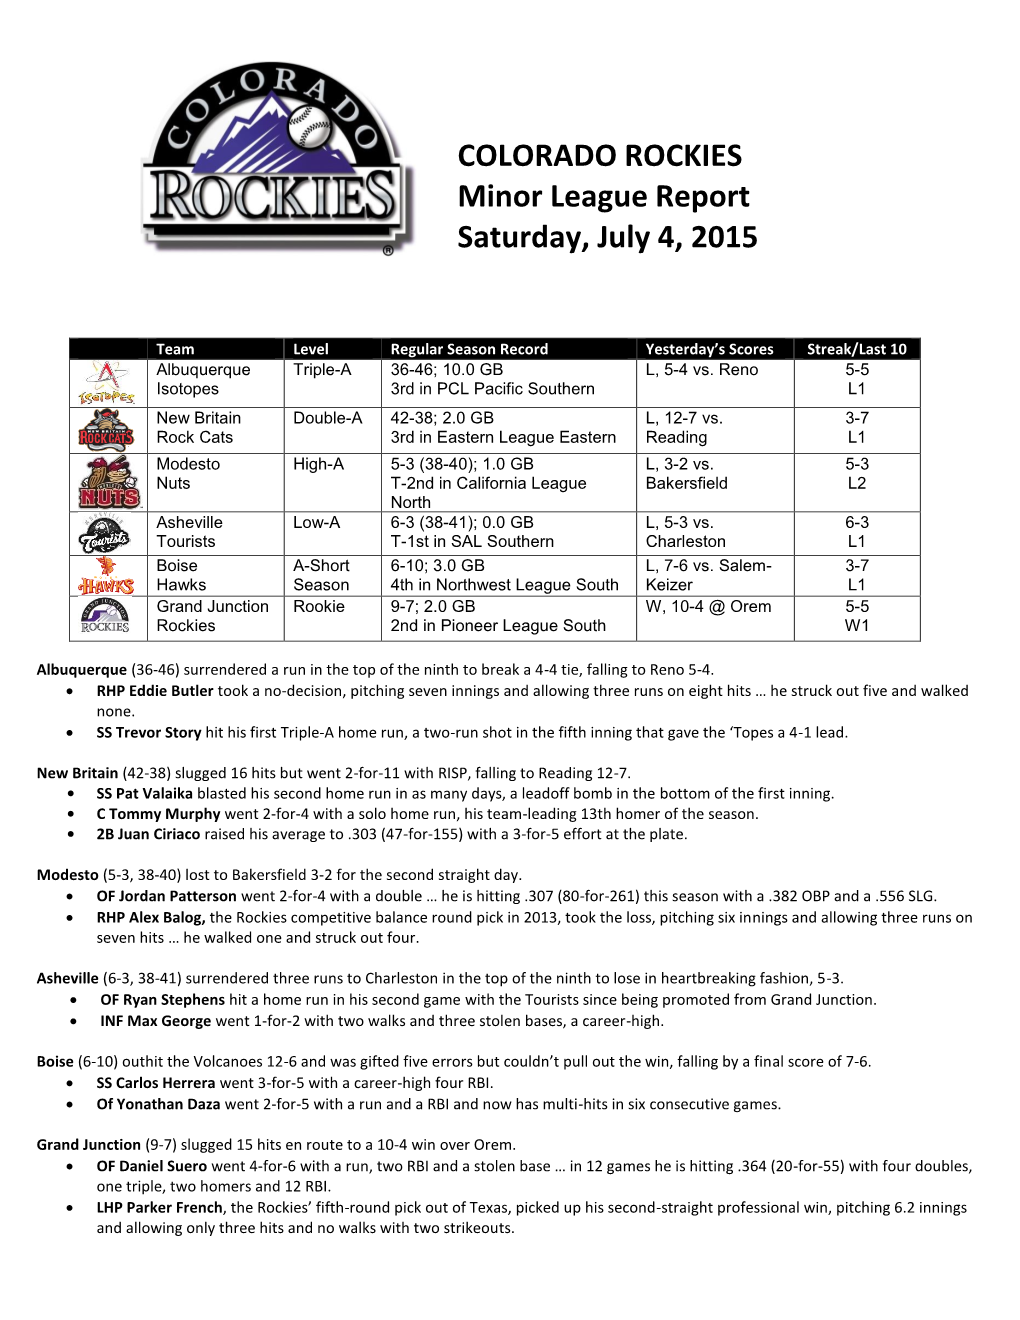 COLORADO ROCKIES Minor League Report Saturday, July 4, 2015